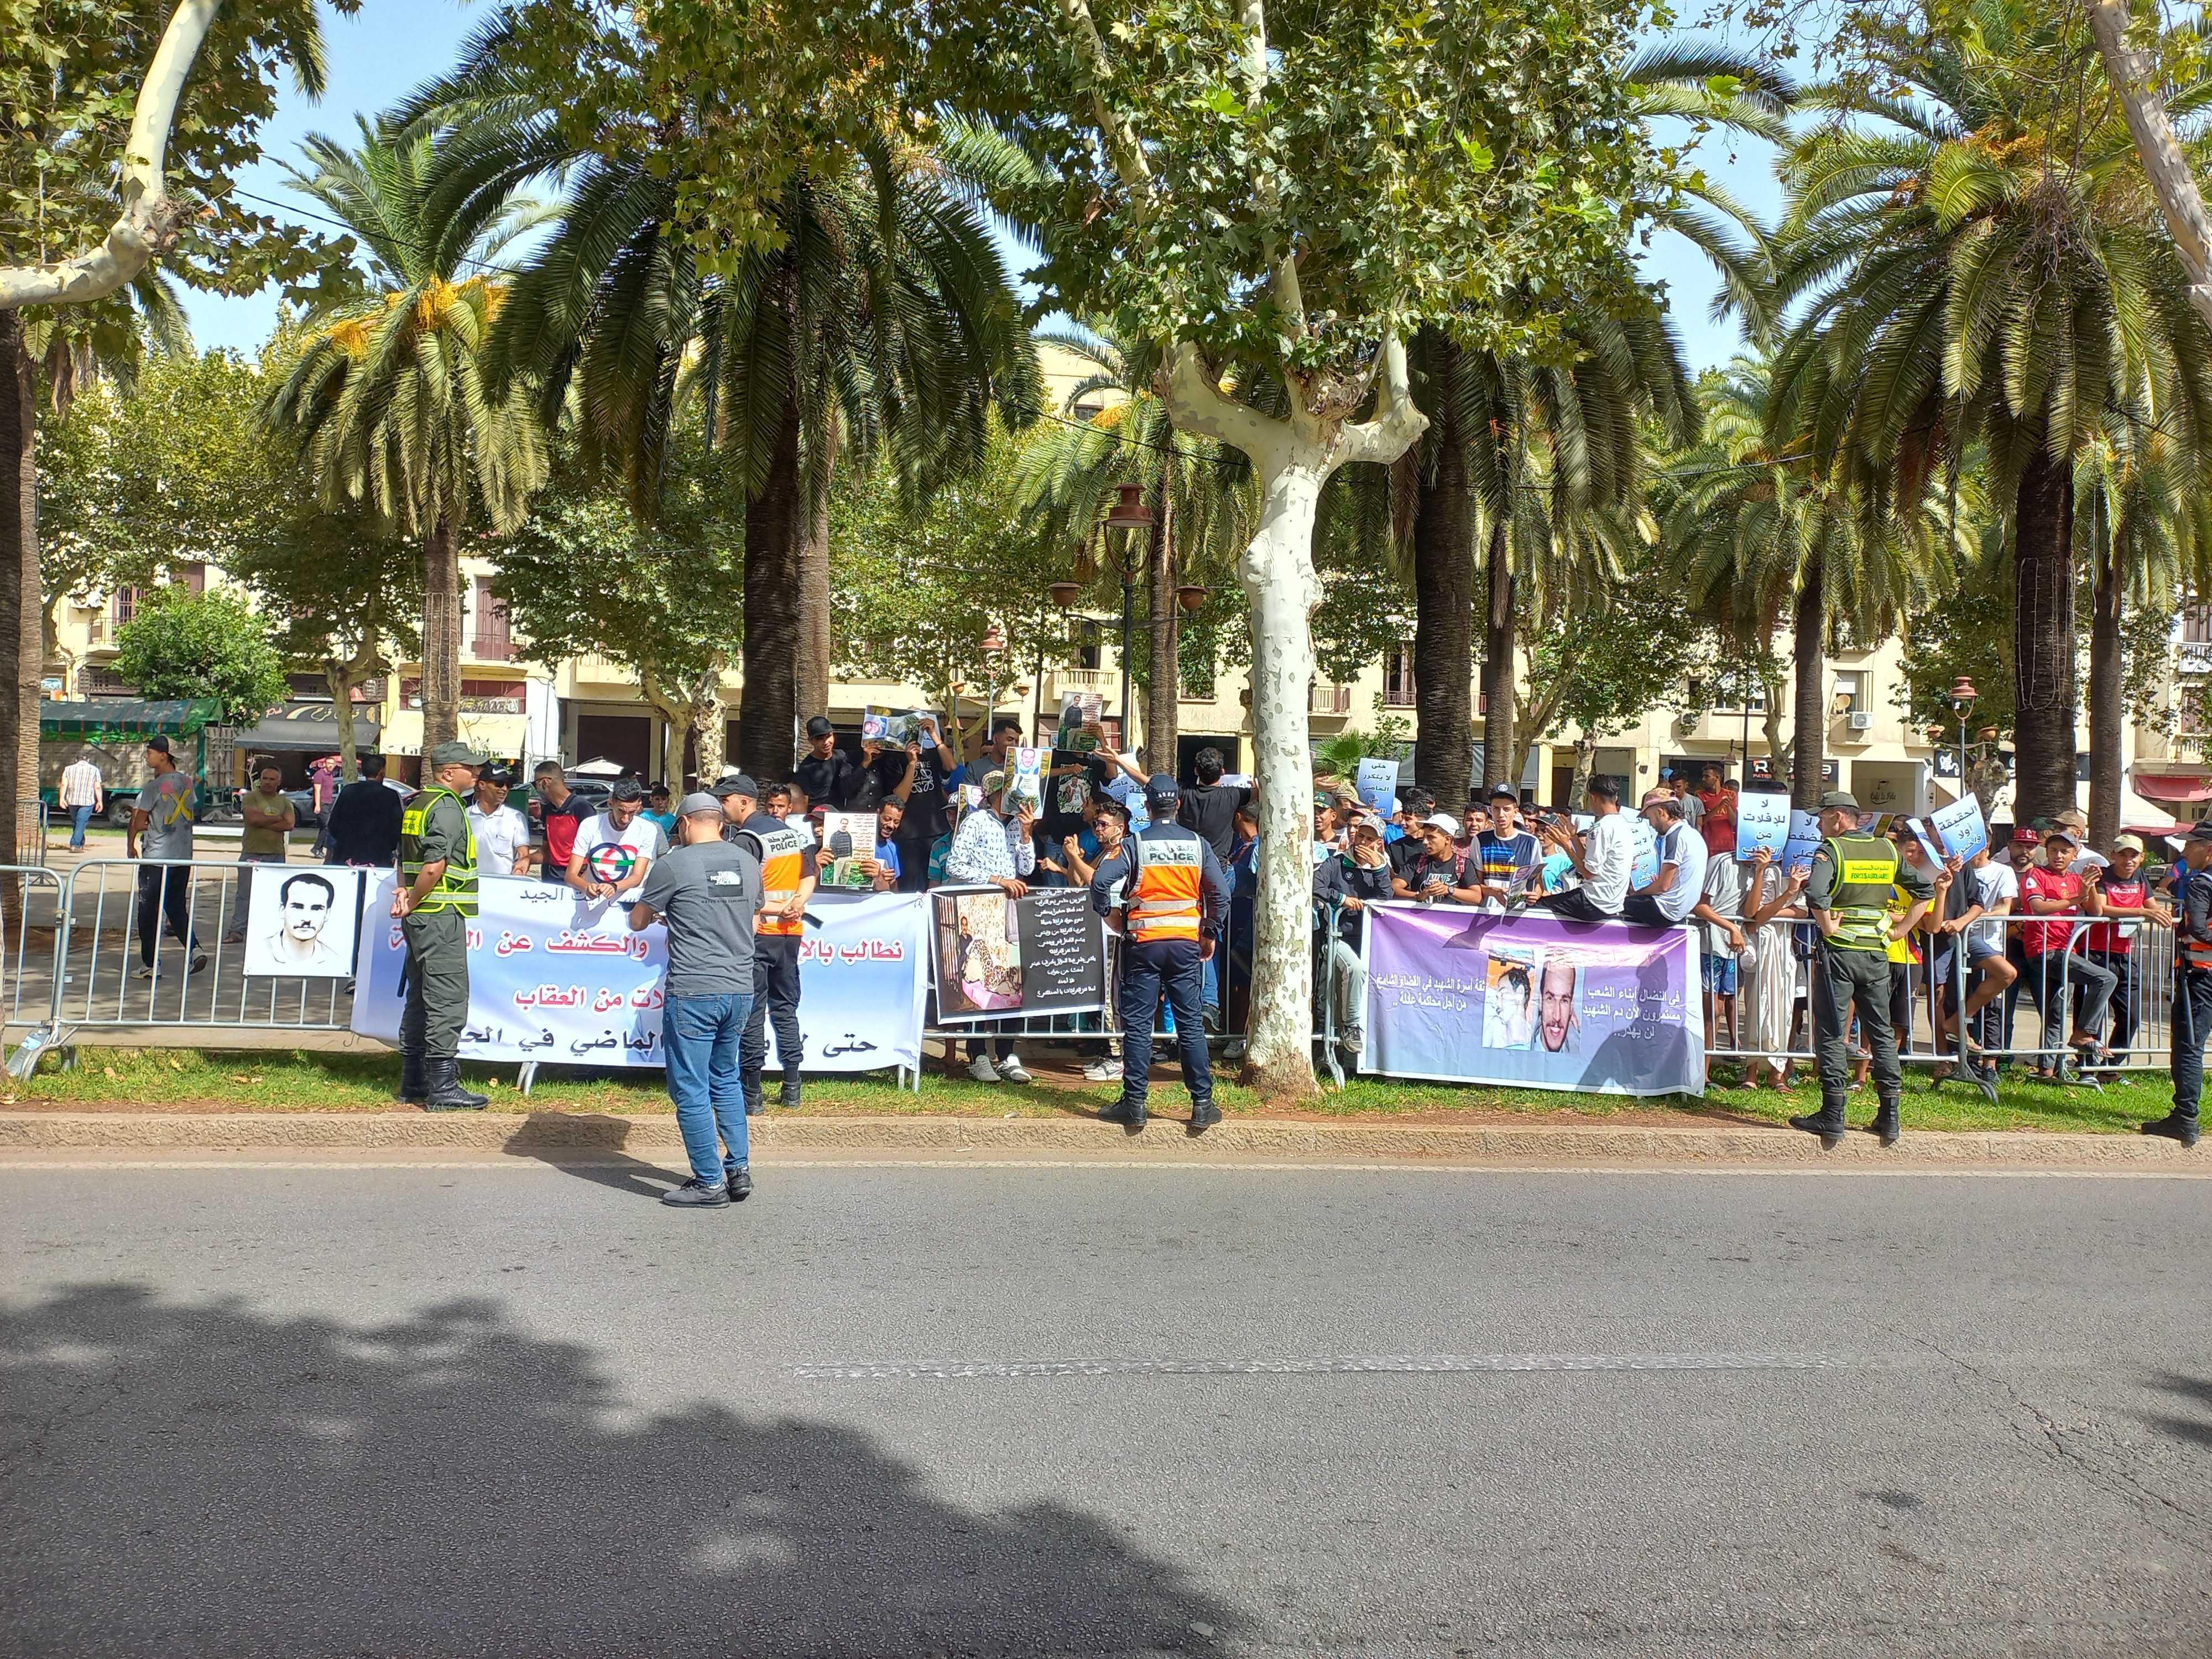 عائلة وأصدقاء الطالب أيت الجيد ينظمون وقفة احتجاجية أمام باب محكمة الاستئناف بفاس